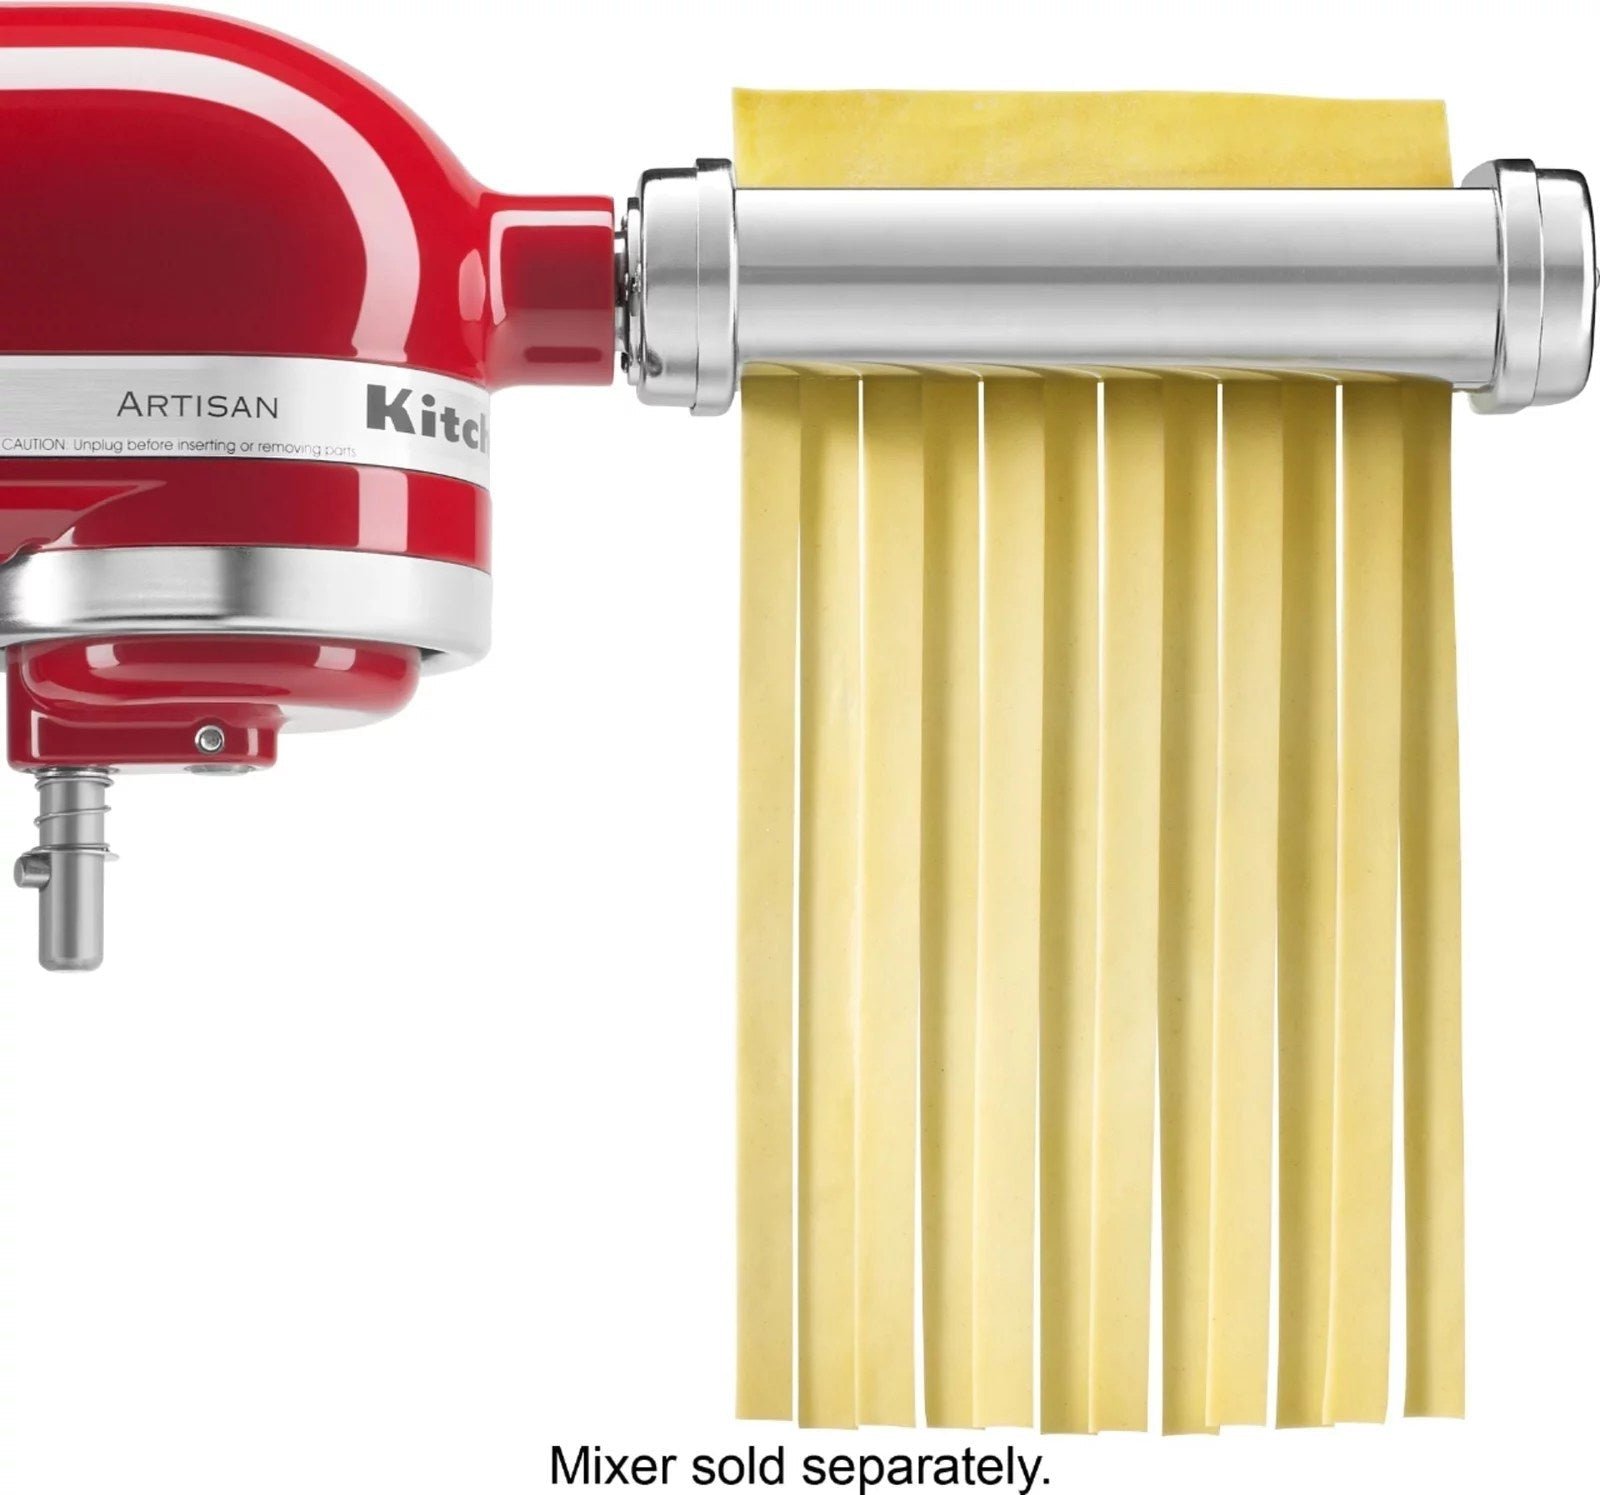 Metal Pasta Maker Attachment for KitchenAid Mixers -Kitchen aid Mixer Accessories  Pasta Attachment 3-in-1